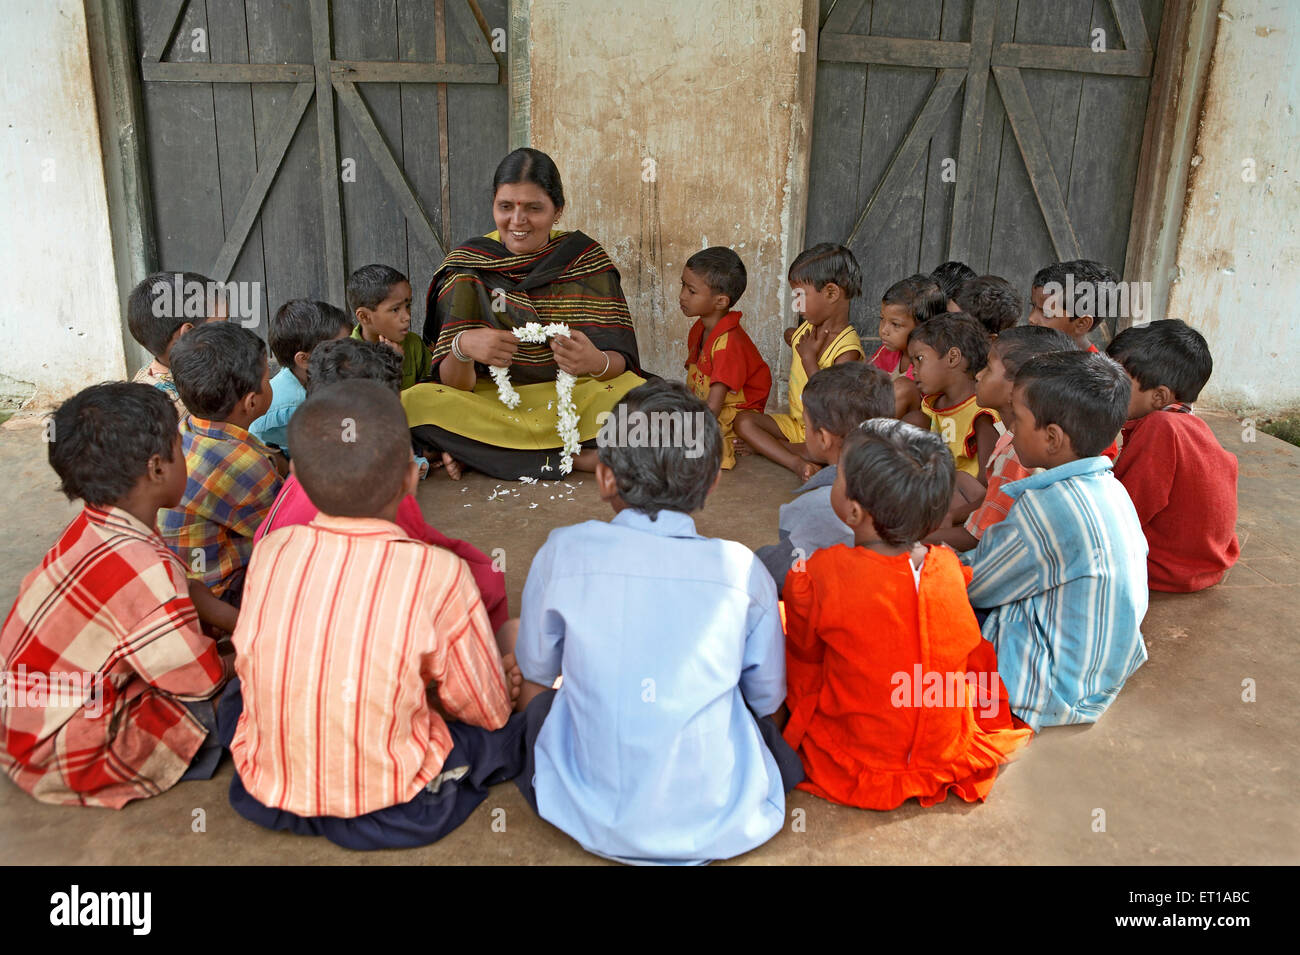 Une initiative sociale pour enseignants dans les écoles rurales avec enfants a été lancée par l'ONG Chinmaya Organisation de développement rural Inde Asie Banque D'Images